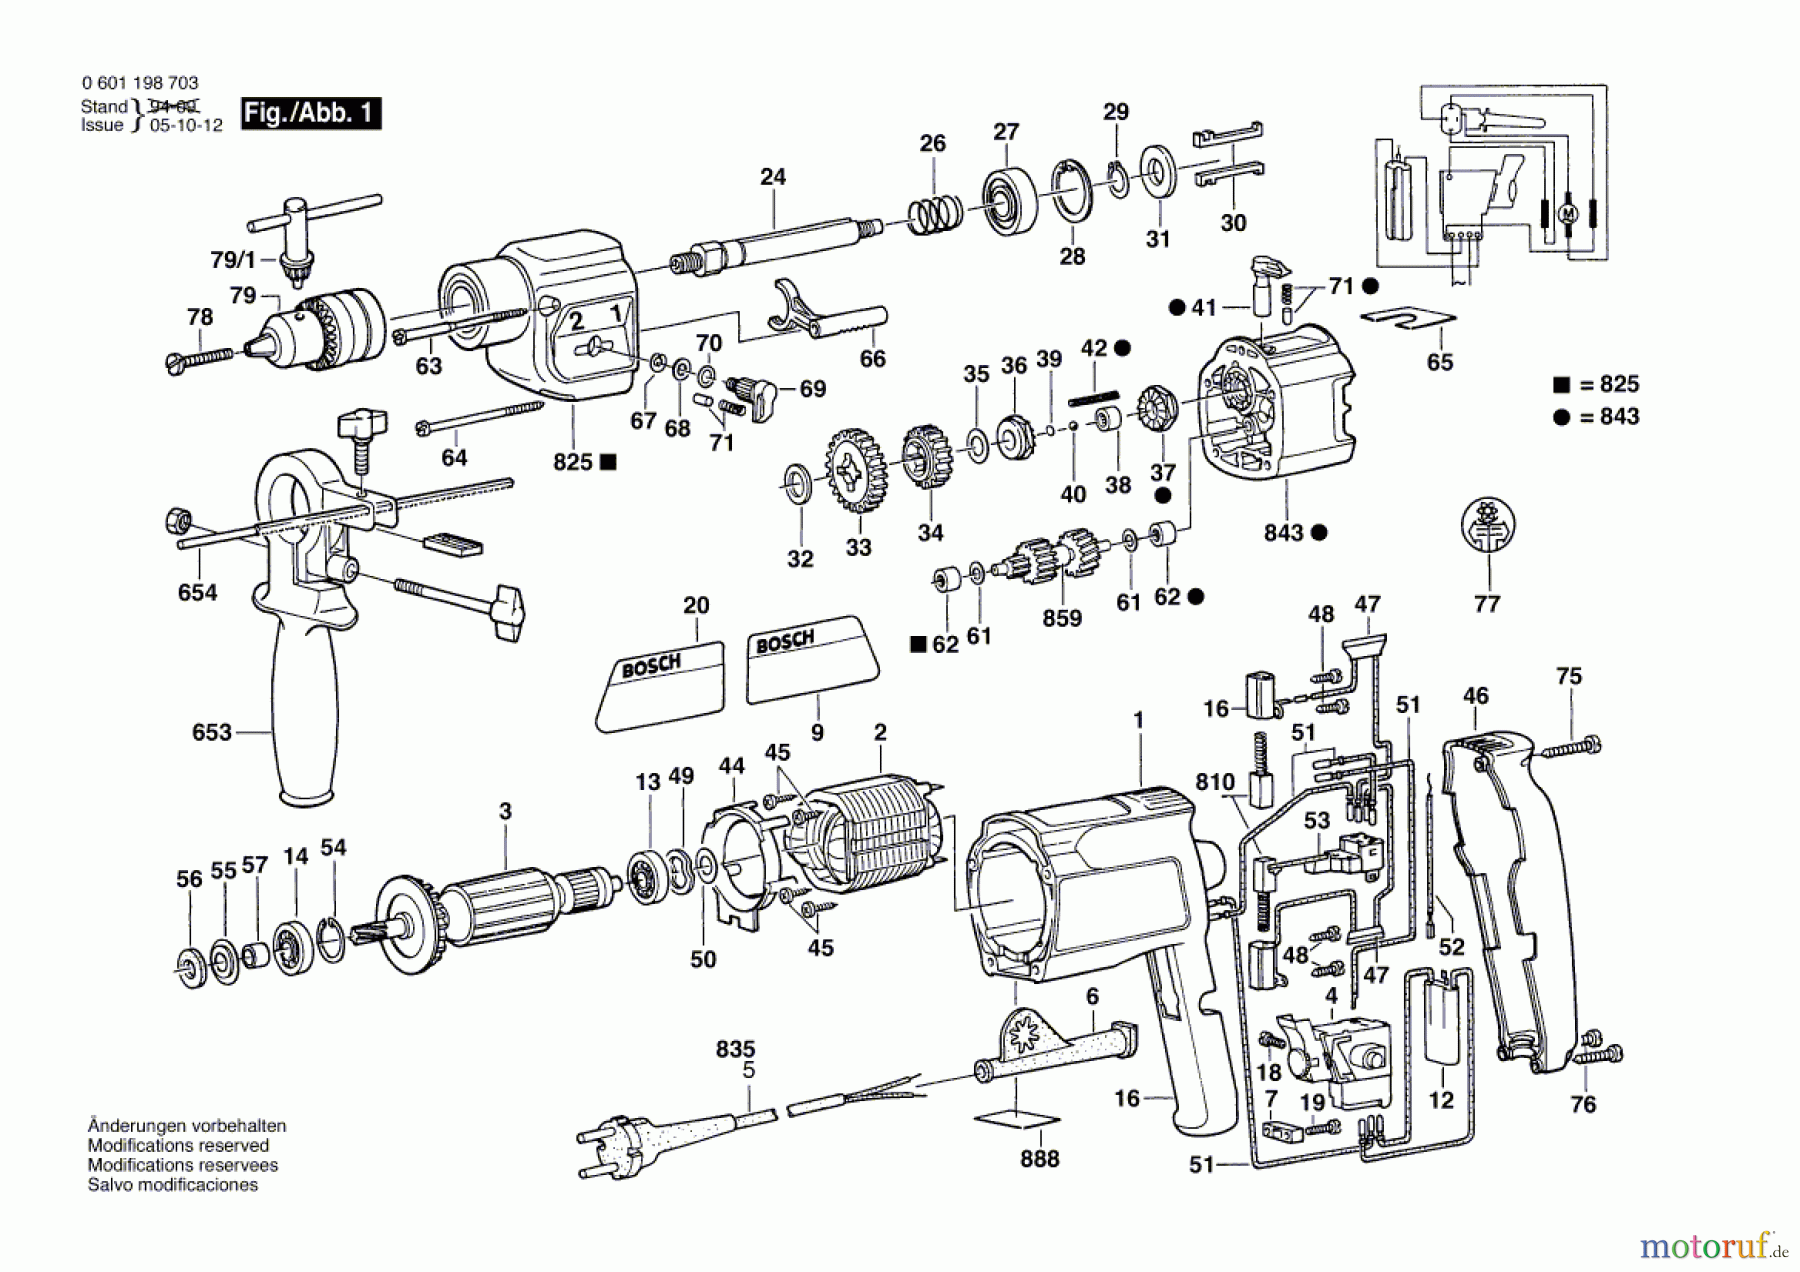  Bosch Werkzeug Schlagbohrmaschine GSB 20-2 RE Seite 1